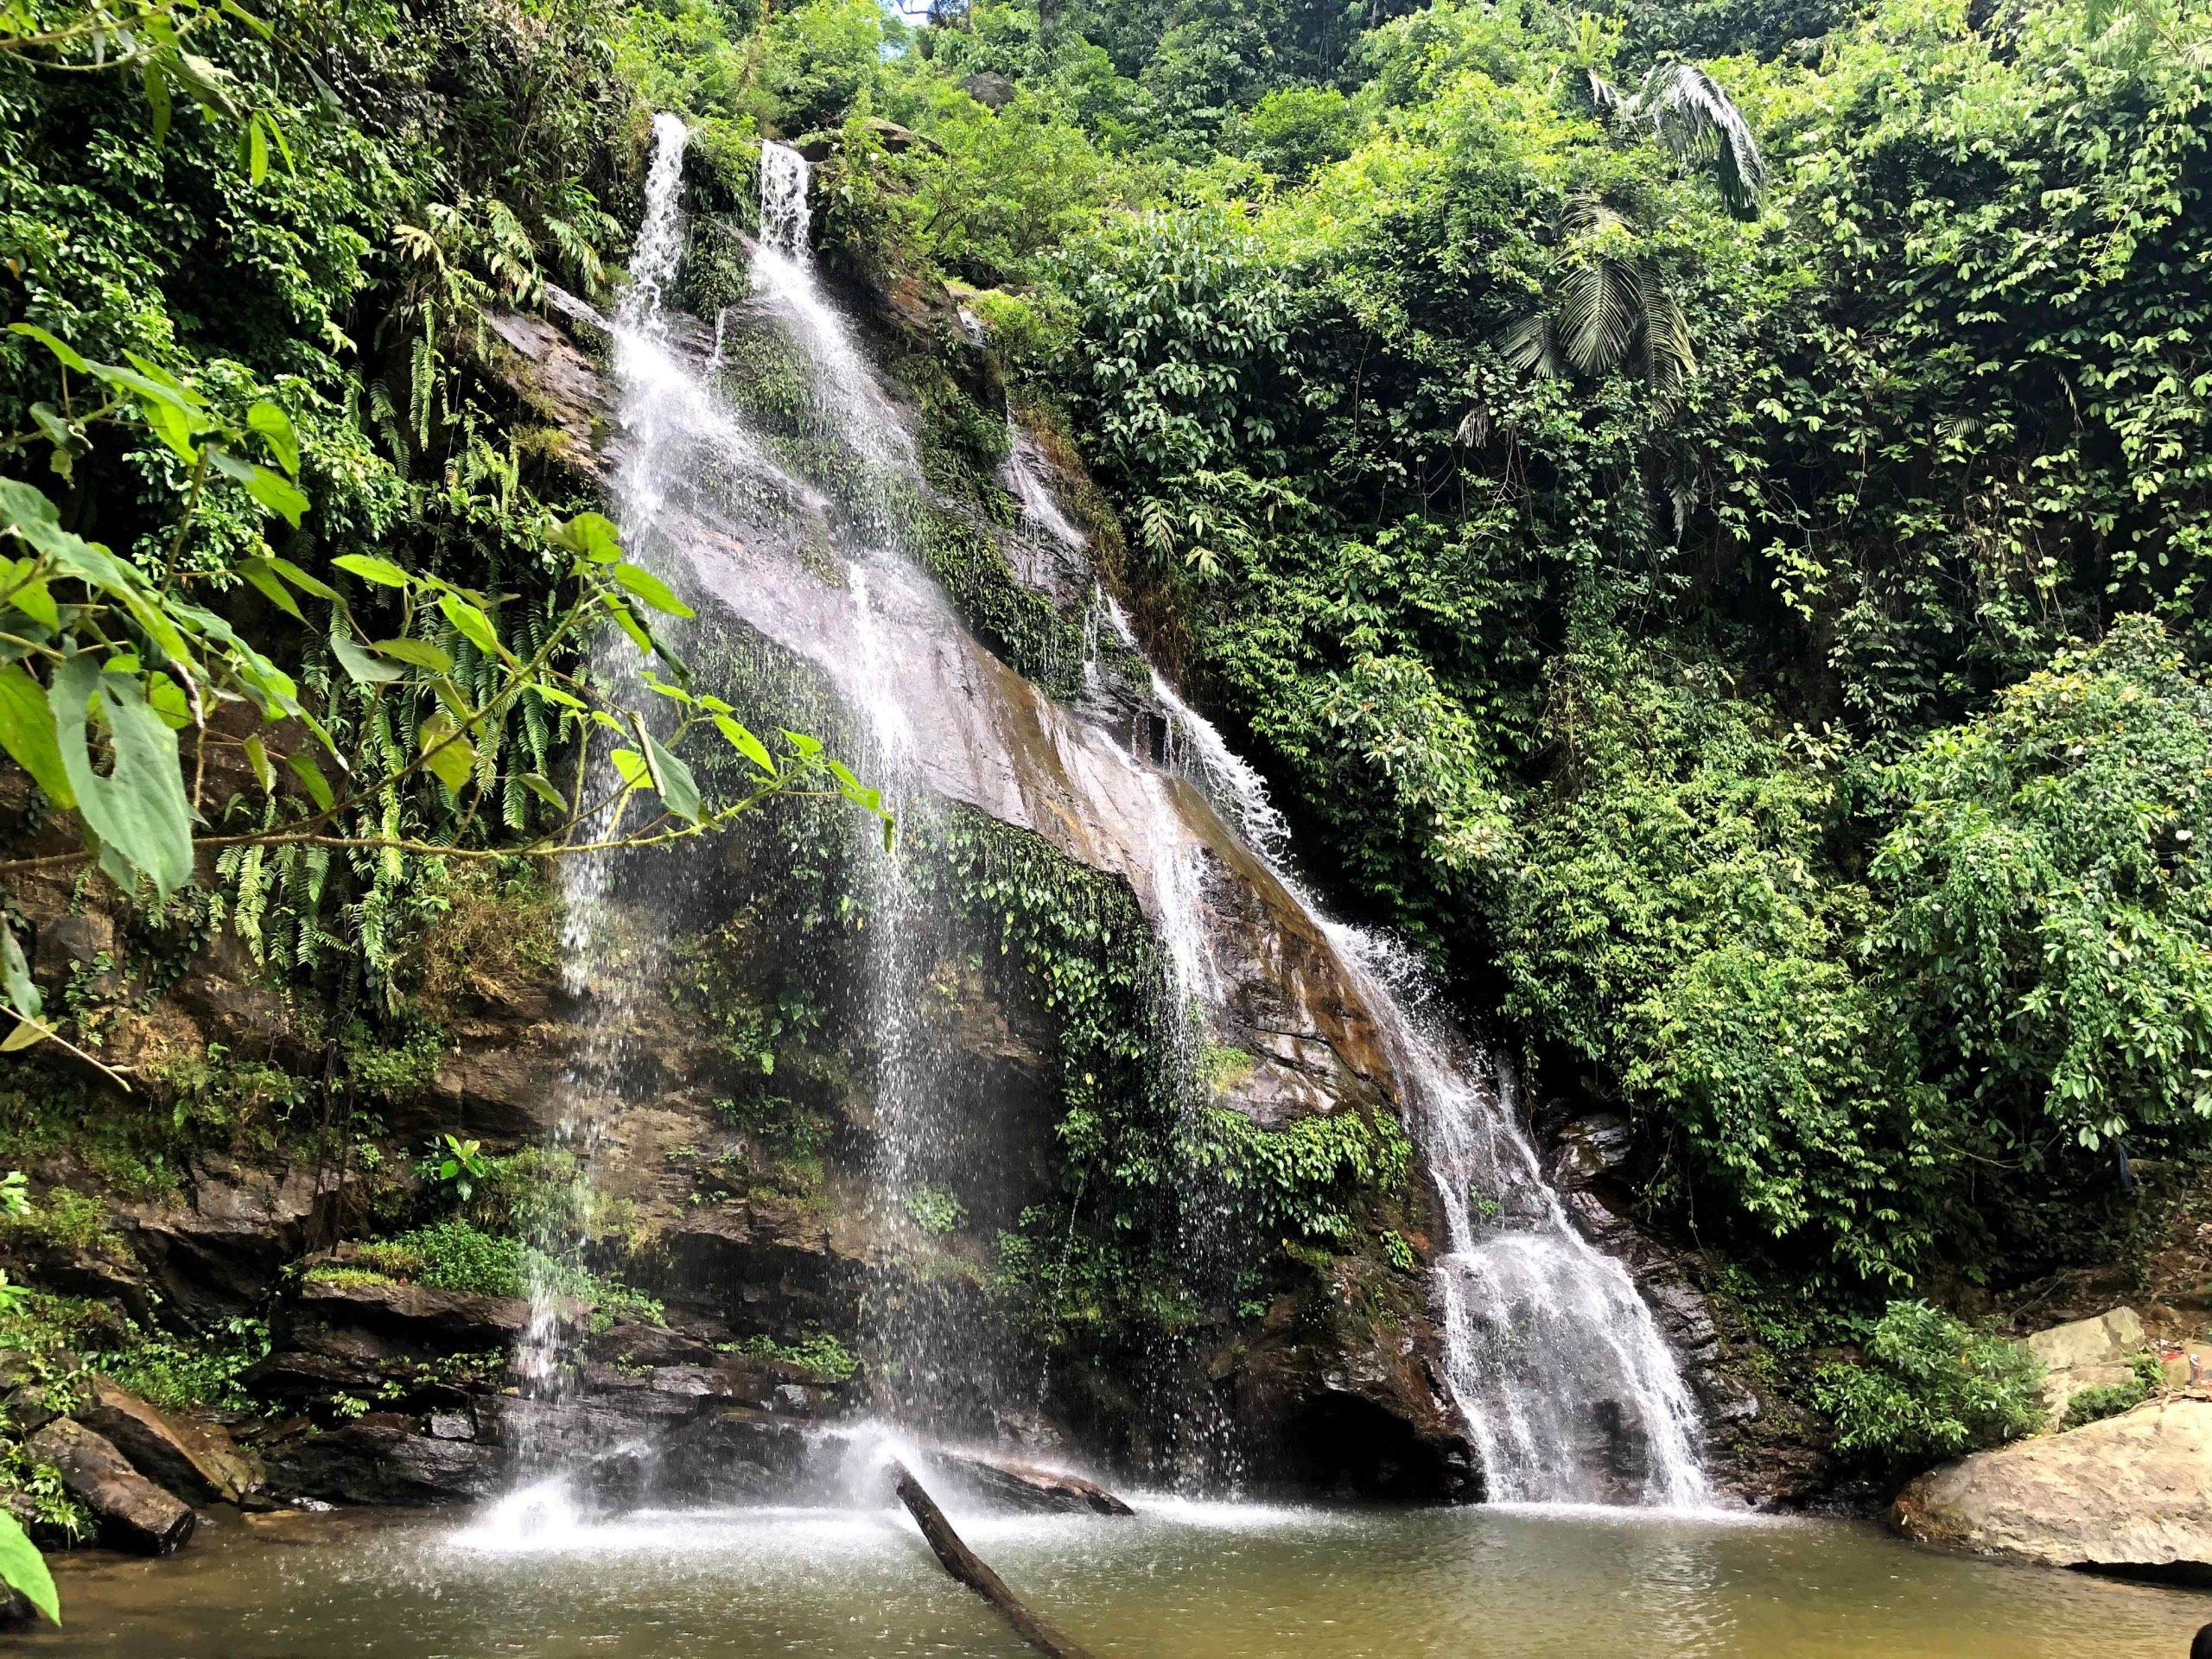 Khám phá vẻ đẹp Thác Mưa giữa núi rừng xanh mát Nghệ An - BlogAnChoi